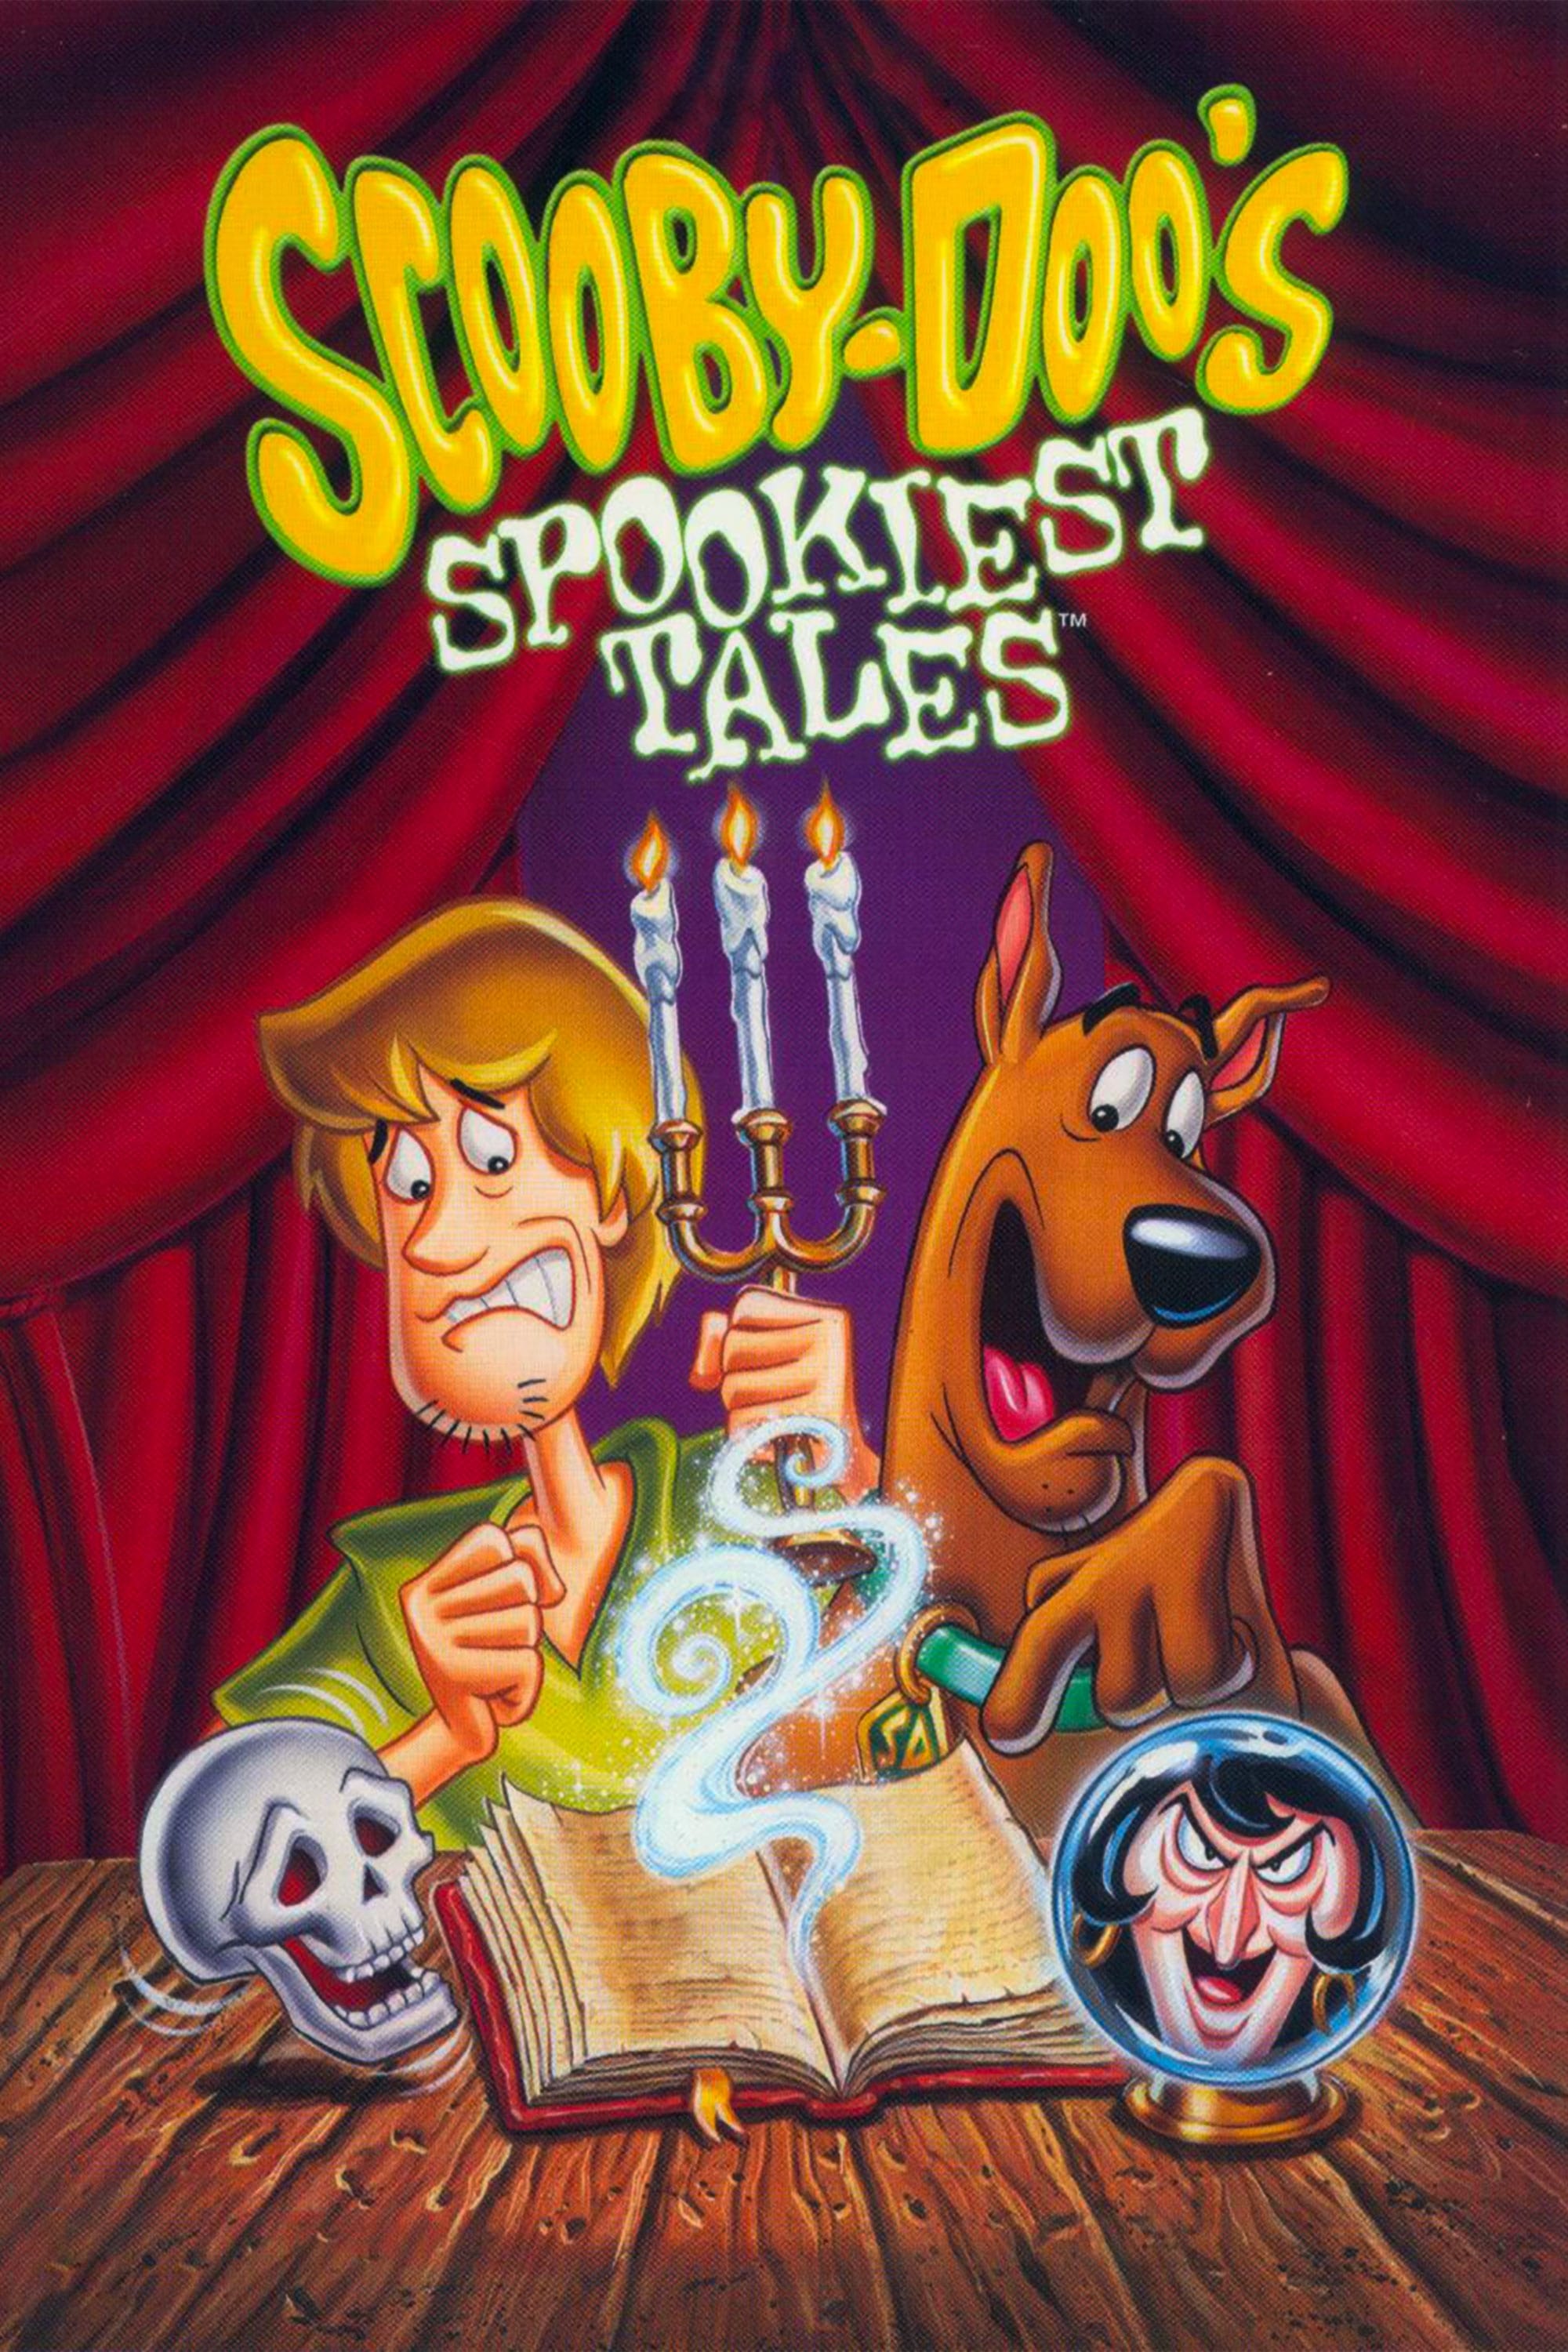 Scooby-Doo's Spookiest Tales